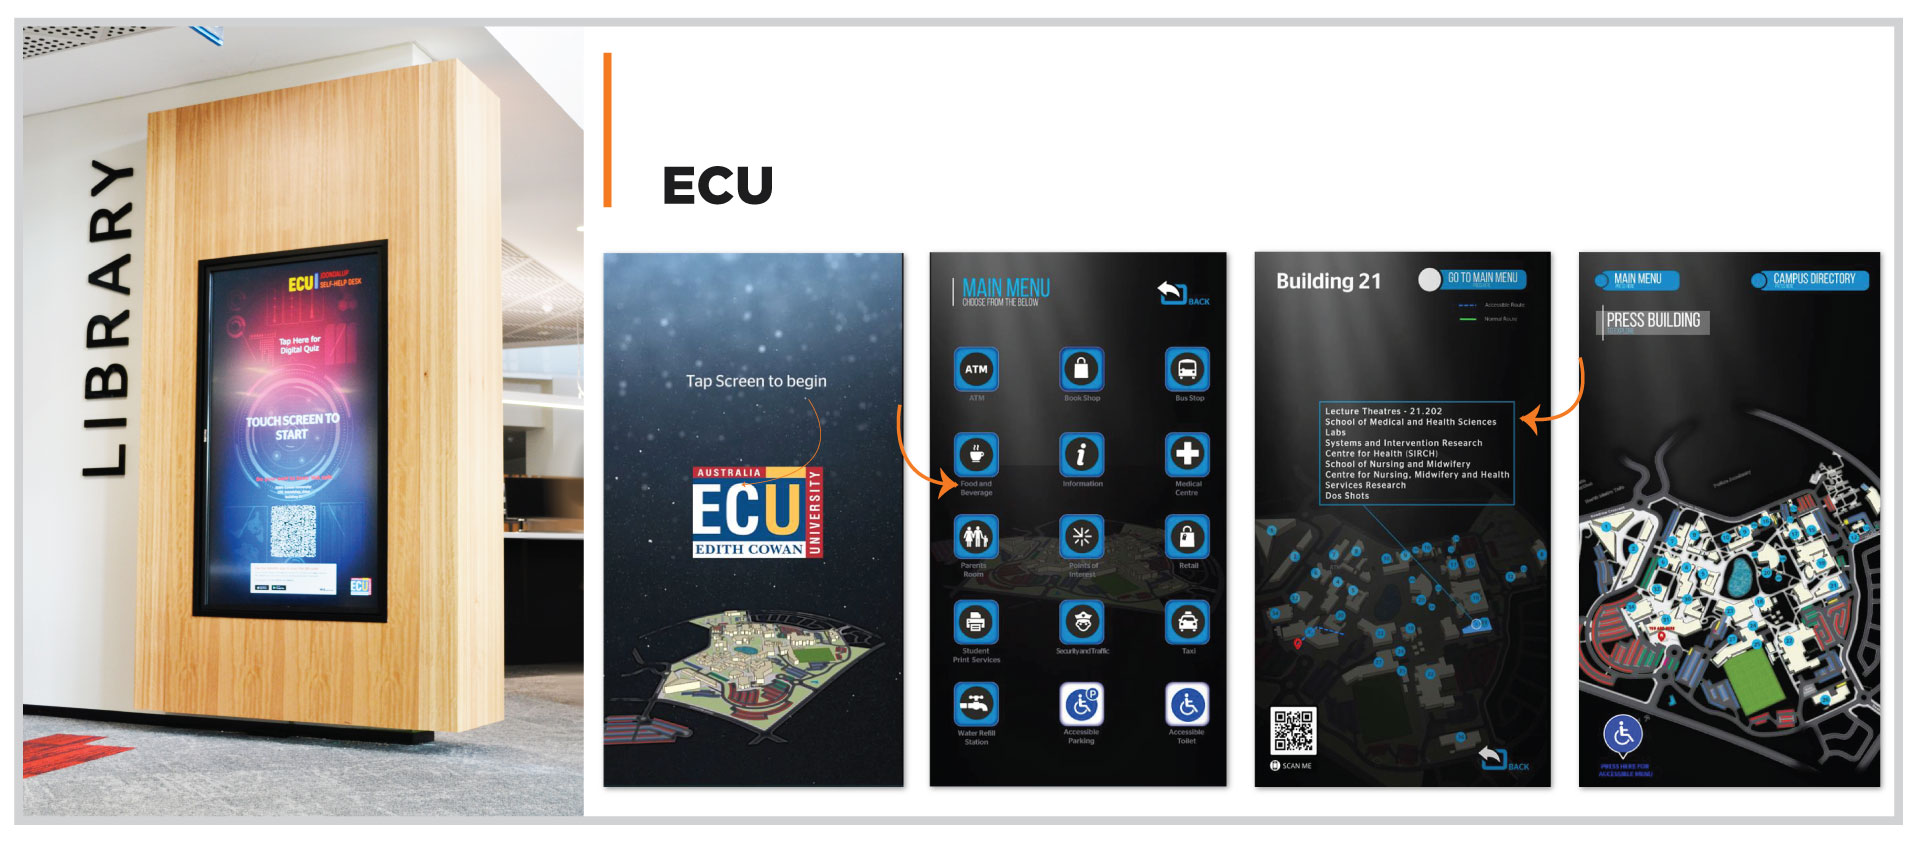 ECU_Touch-screen-content